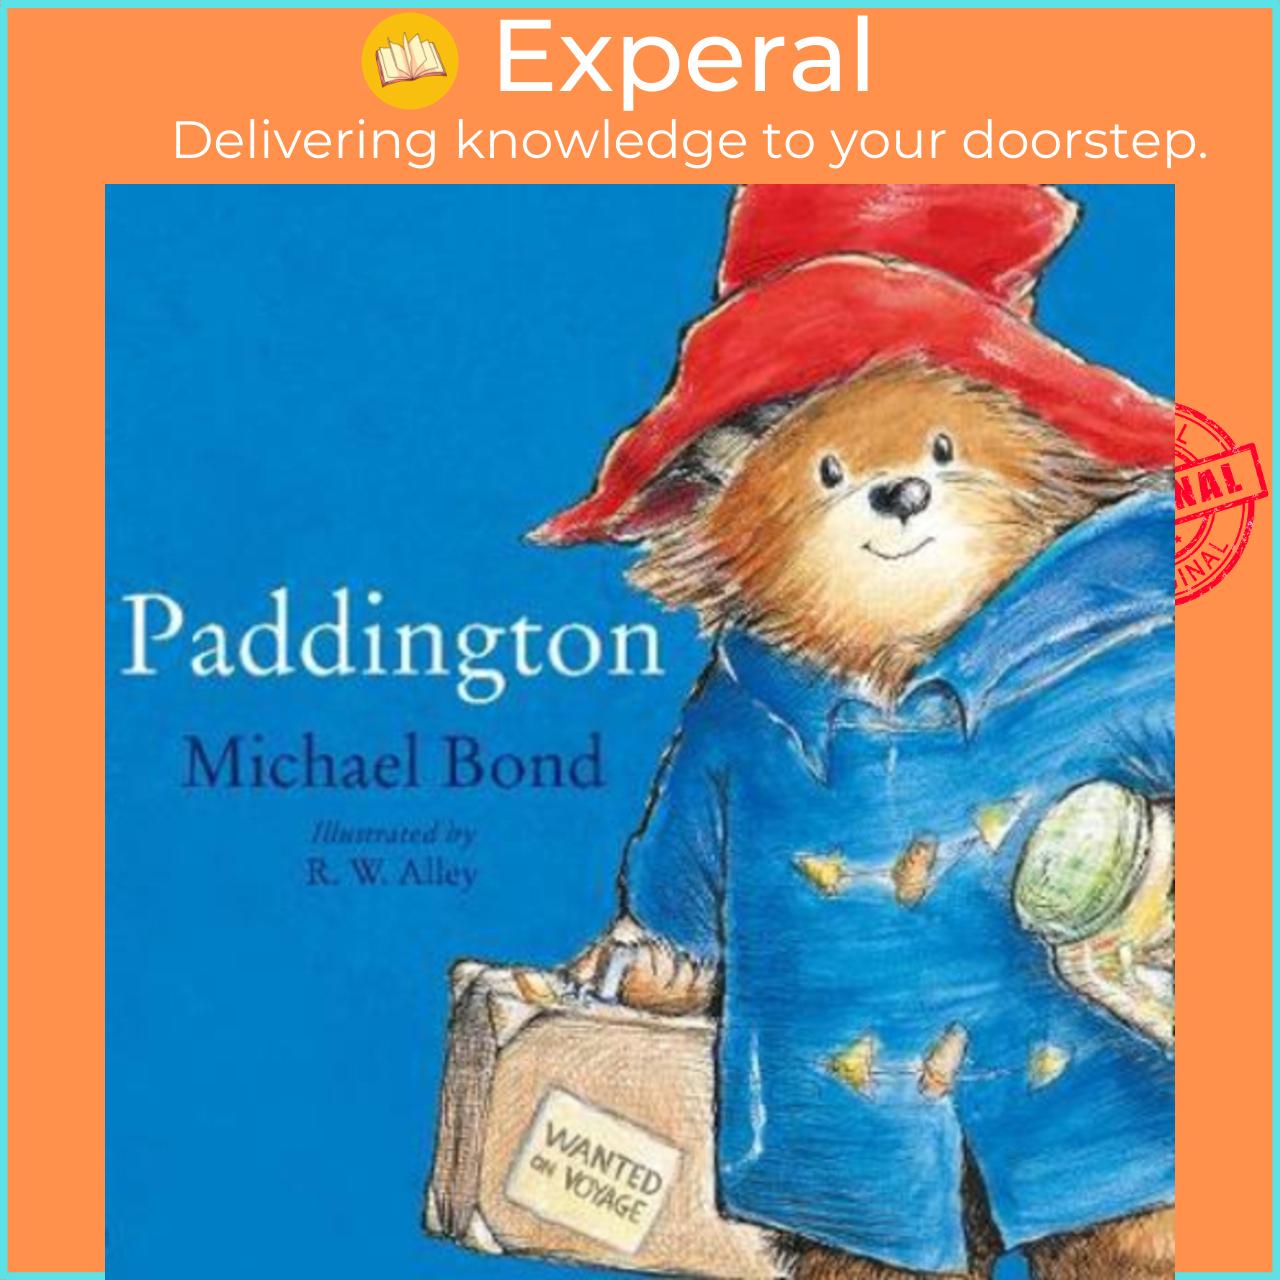 Sách - Paddington by Michael Bond (UK edition, paperback)